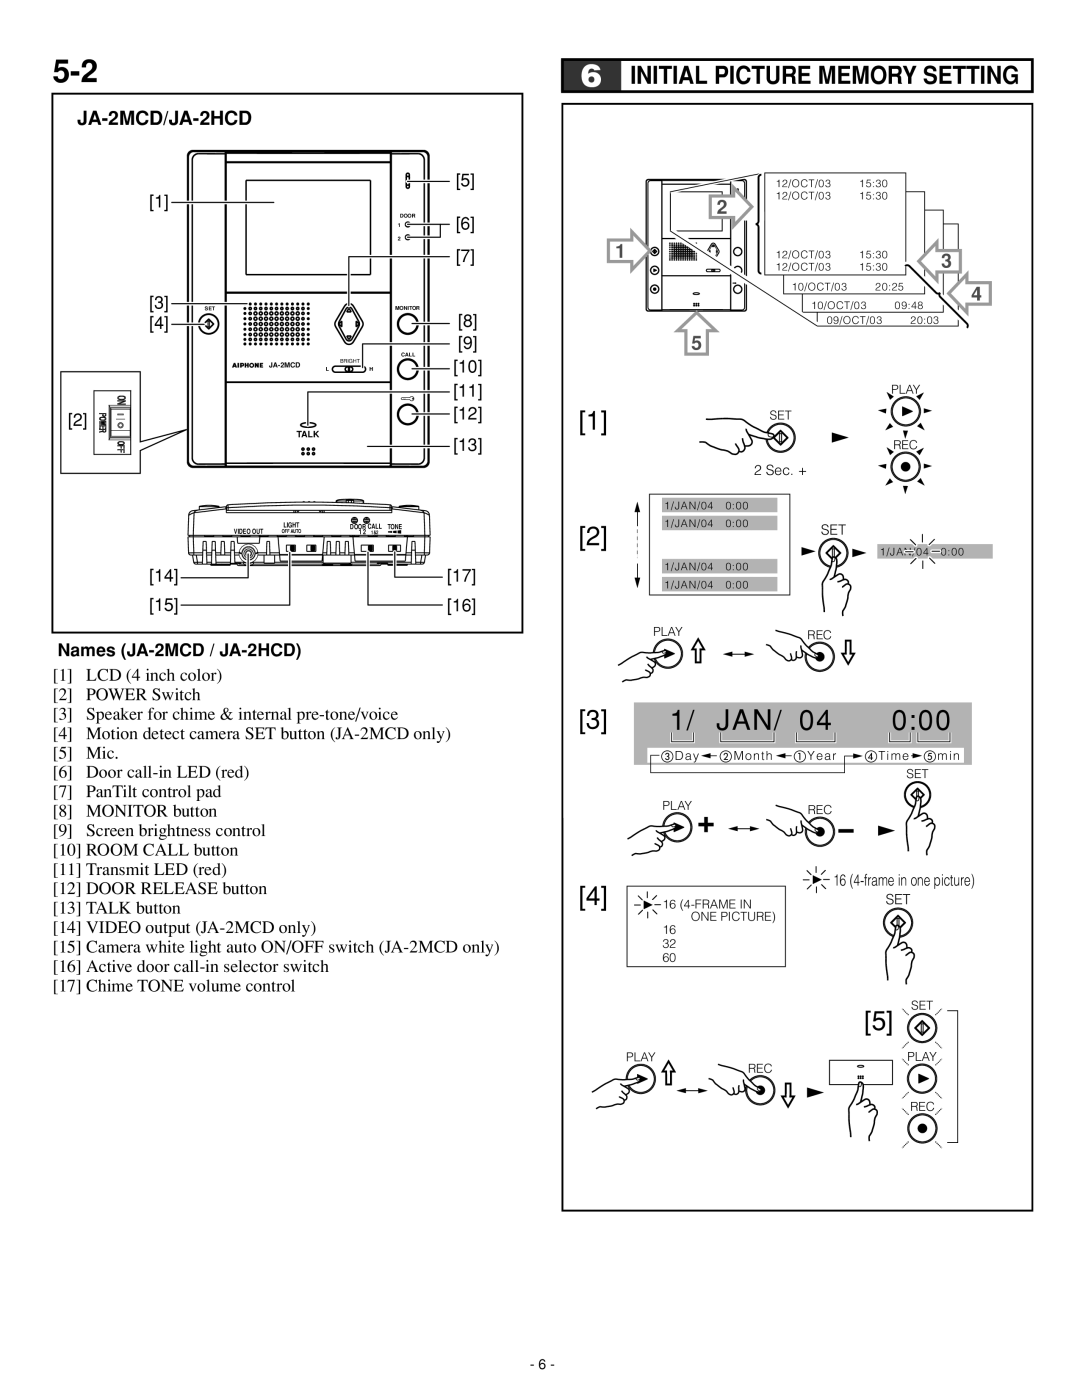 Aiphone Ja-2hcd, JA-2MECD operation manual Initial Picture Memory Setting, JA-2MCD/JA-2HCD, Names JA-2MCD / JA-2HCD 